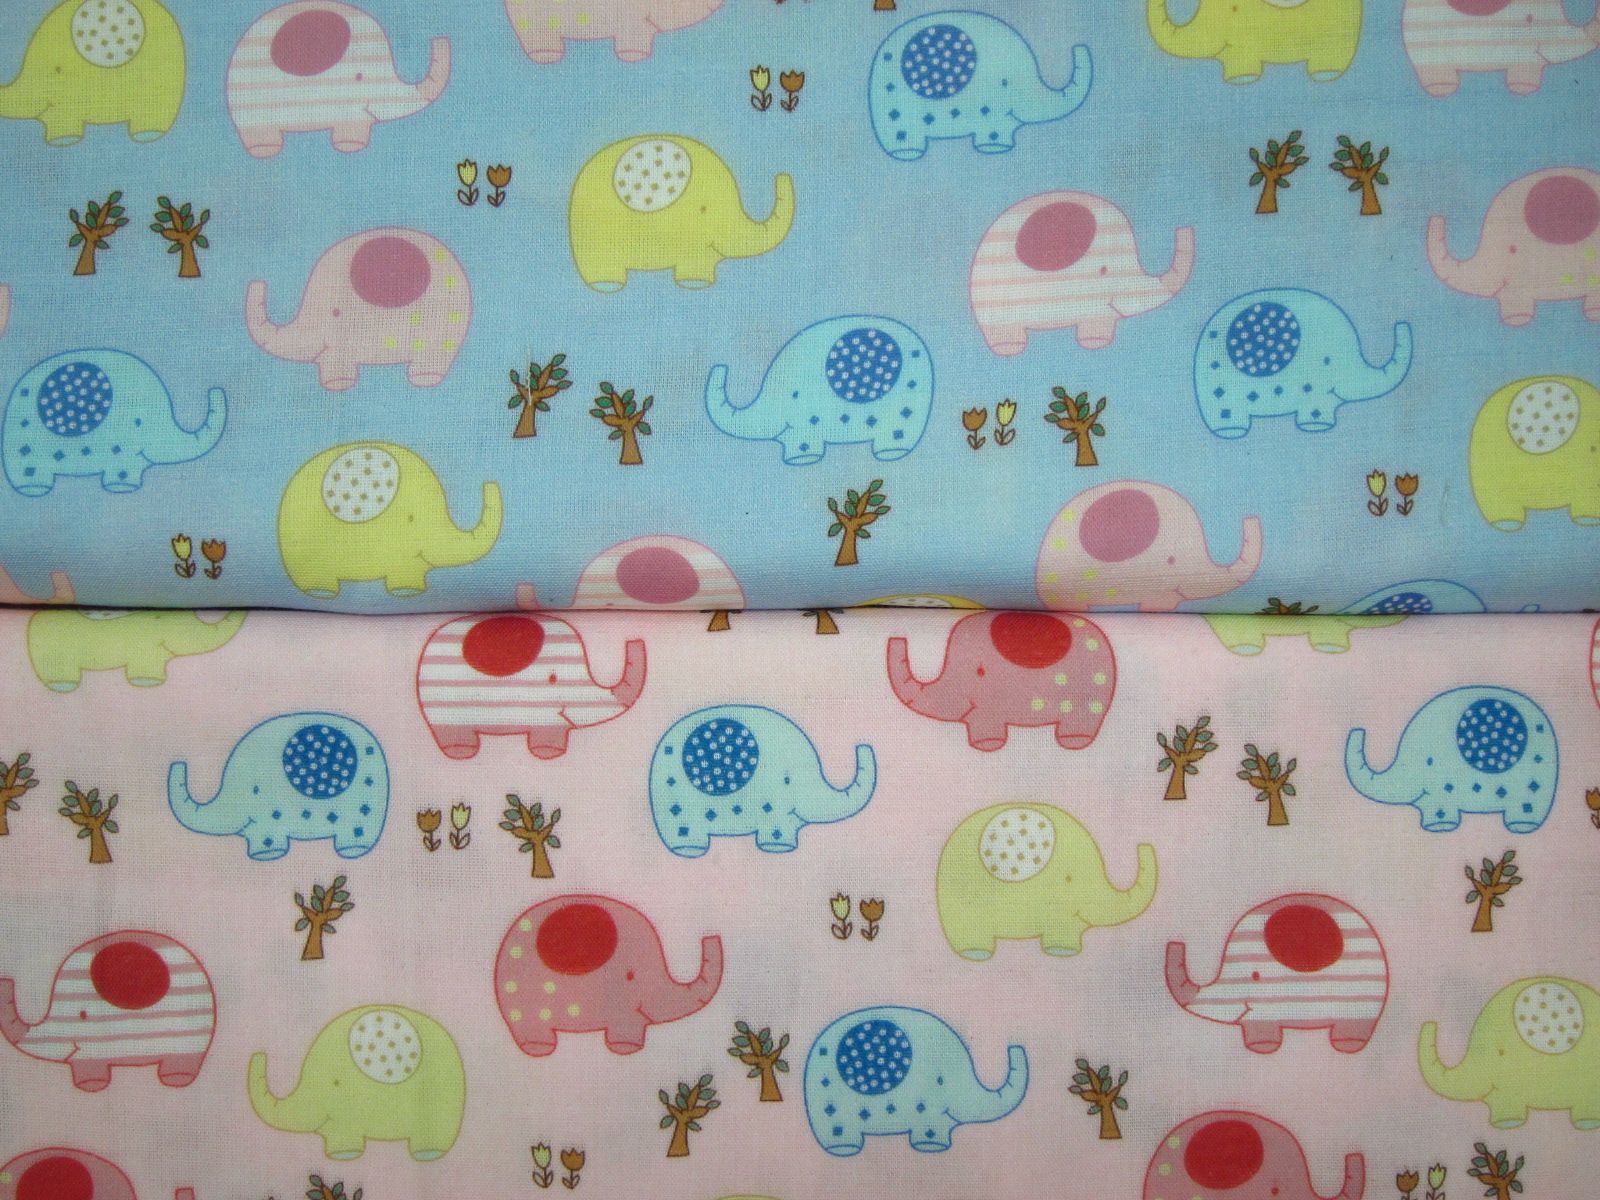 極度舒適二重紗-可愛大象-水藍底、粉底-100%純綿、台灣製造